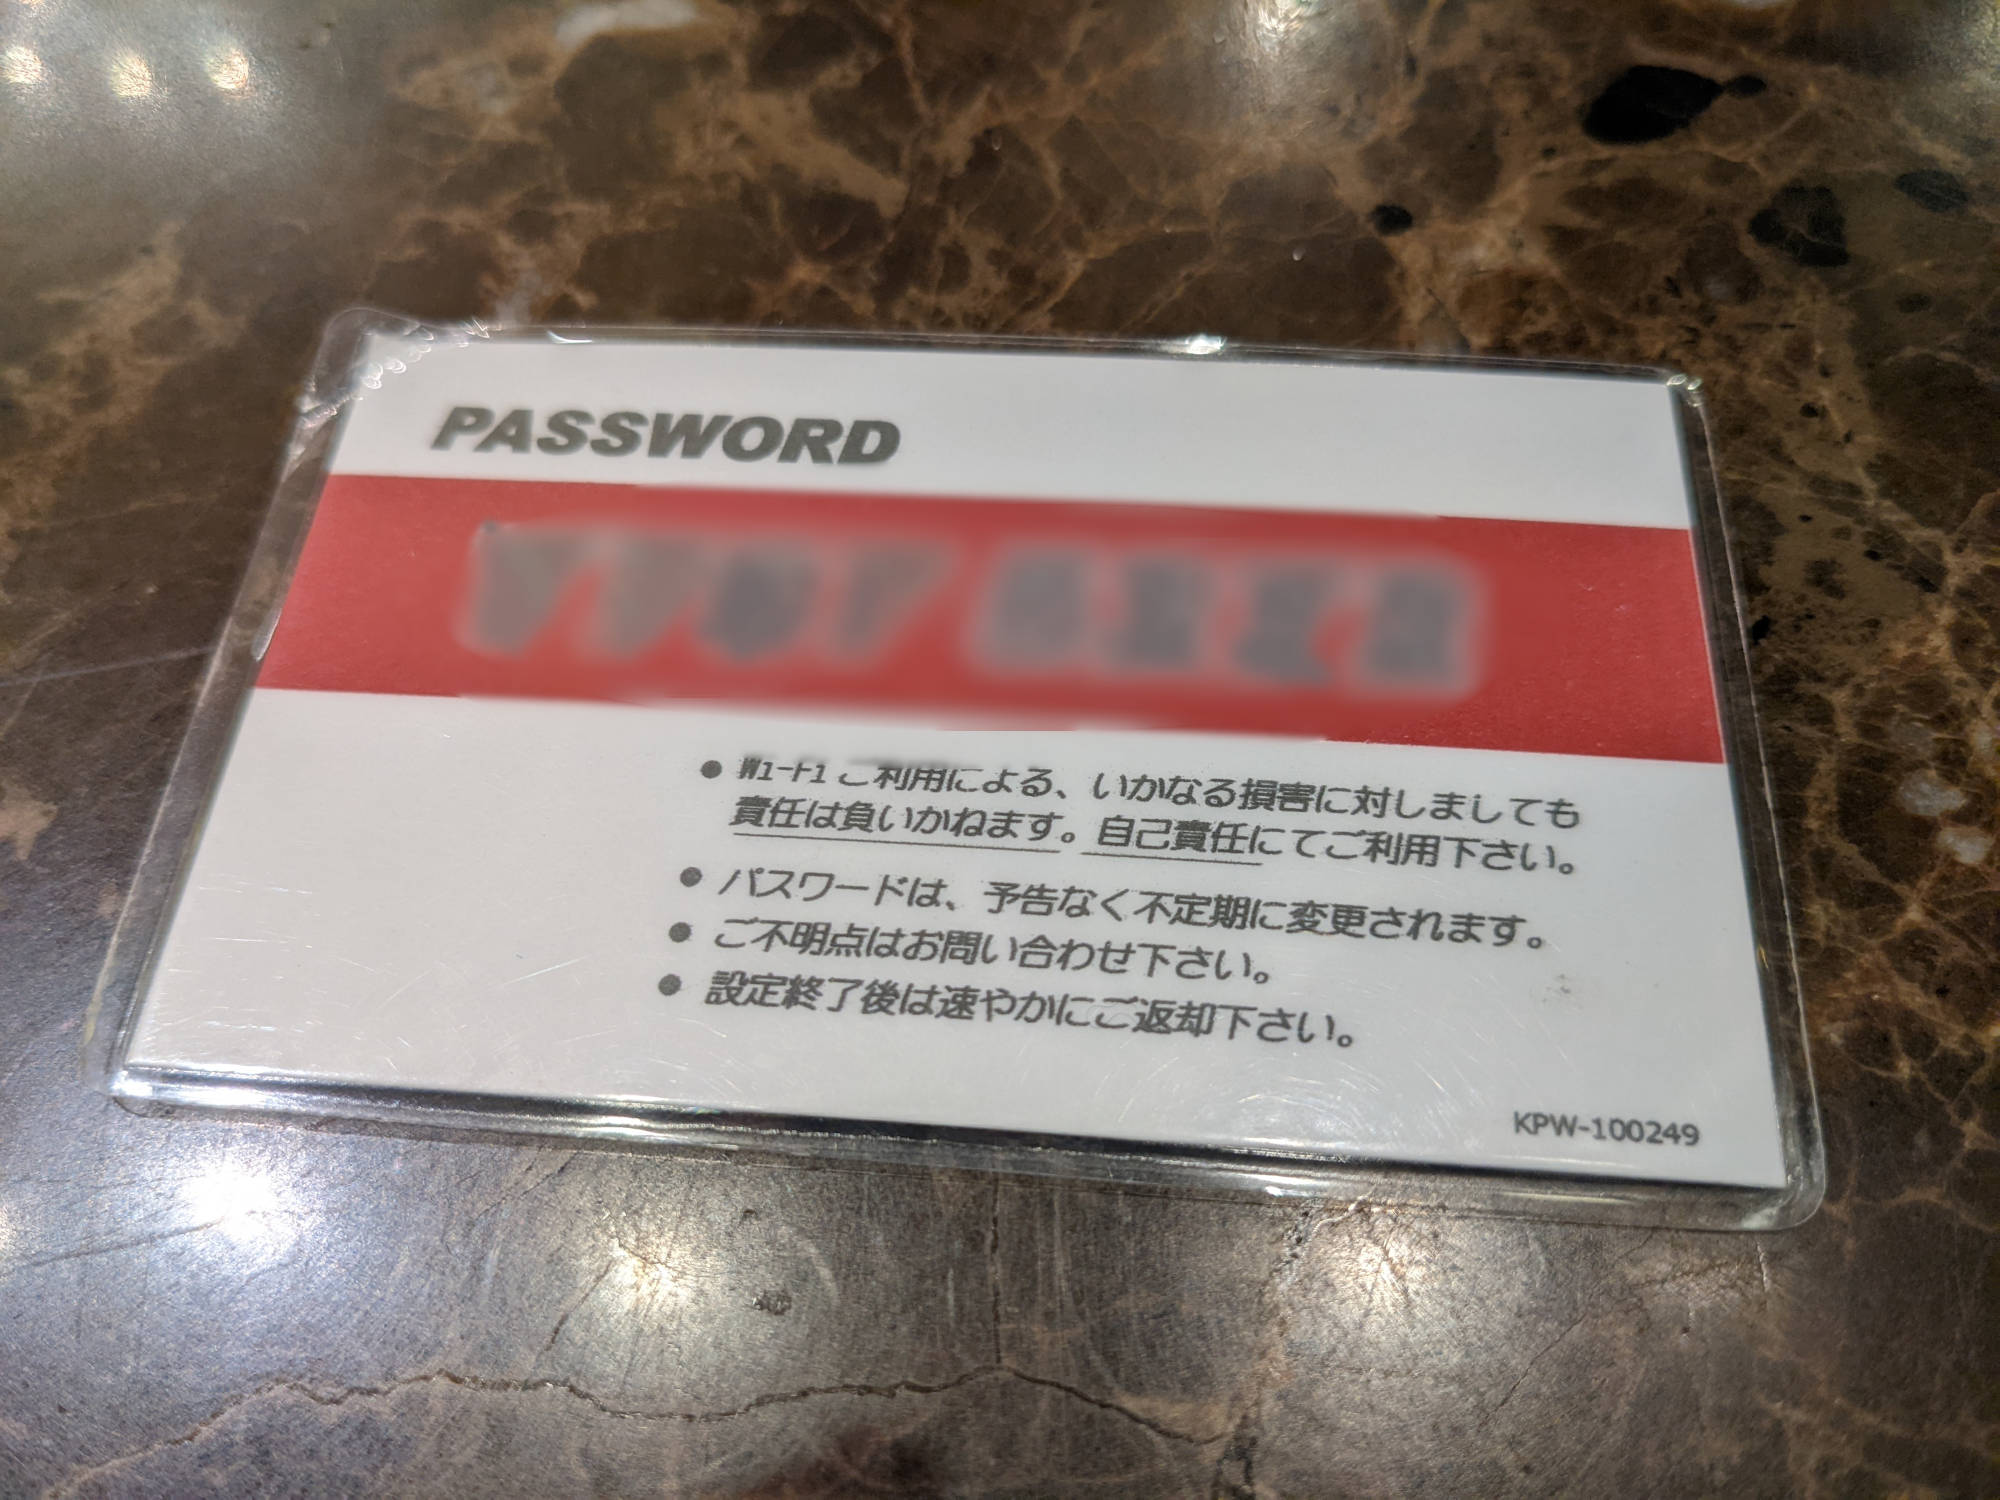 Free Wi-Fiのパスワードを記載されたカード